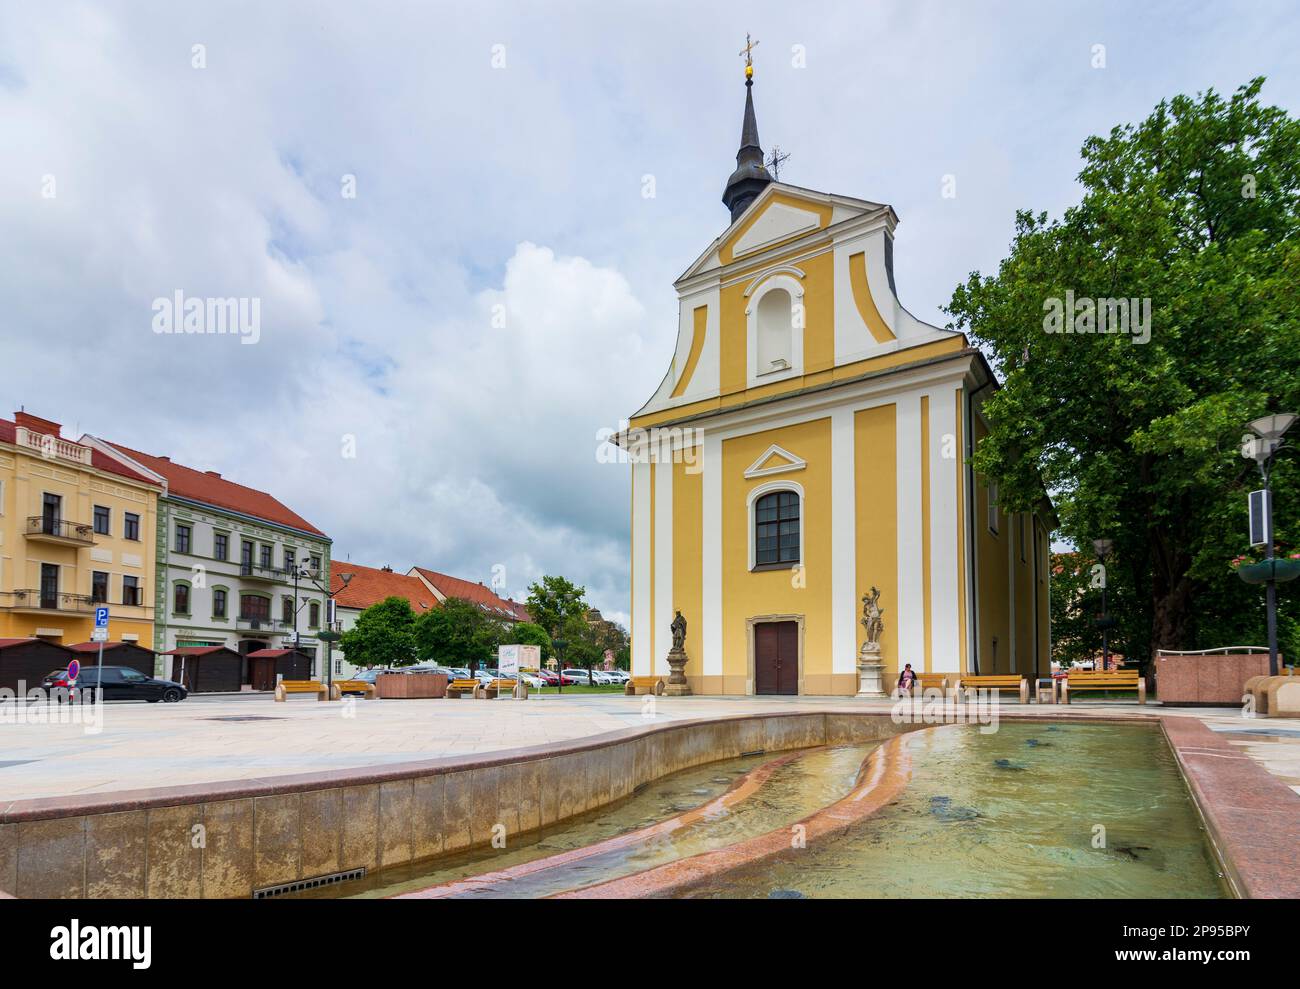 Hodonin (Göding), Chiesa di Jihomoravsky, Moravia meridionale, Moravia meridionale, ceco Foto Stock